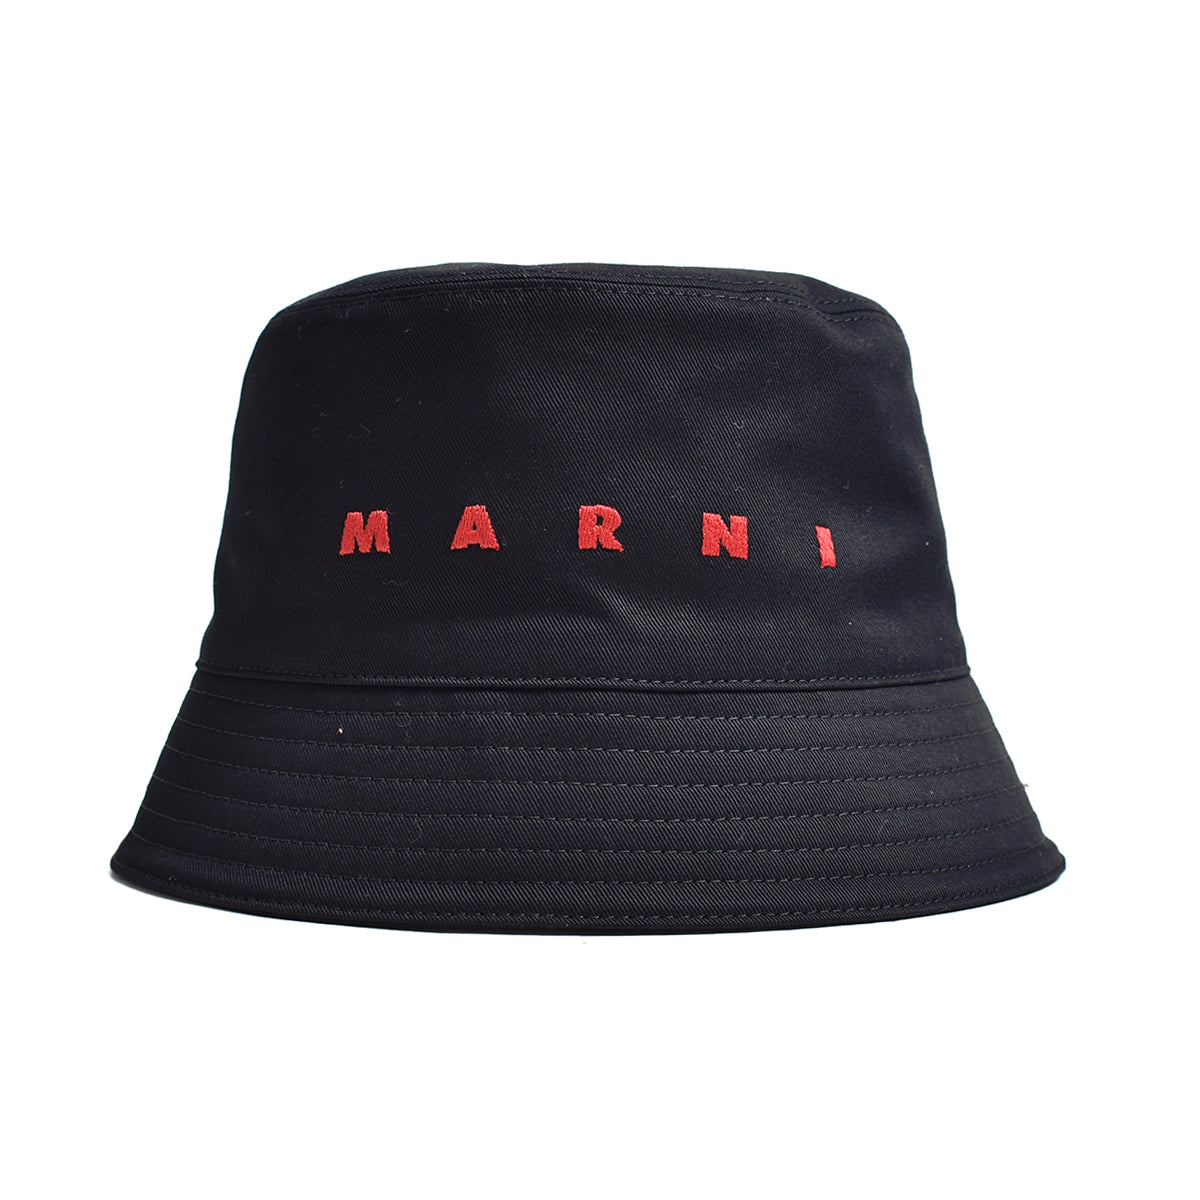 MARNI]HAT/BLACK(CLZC0110S0) – R&Co.